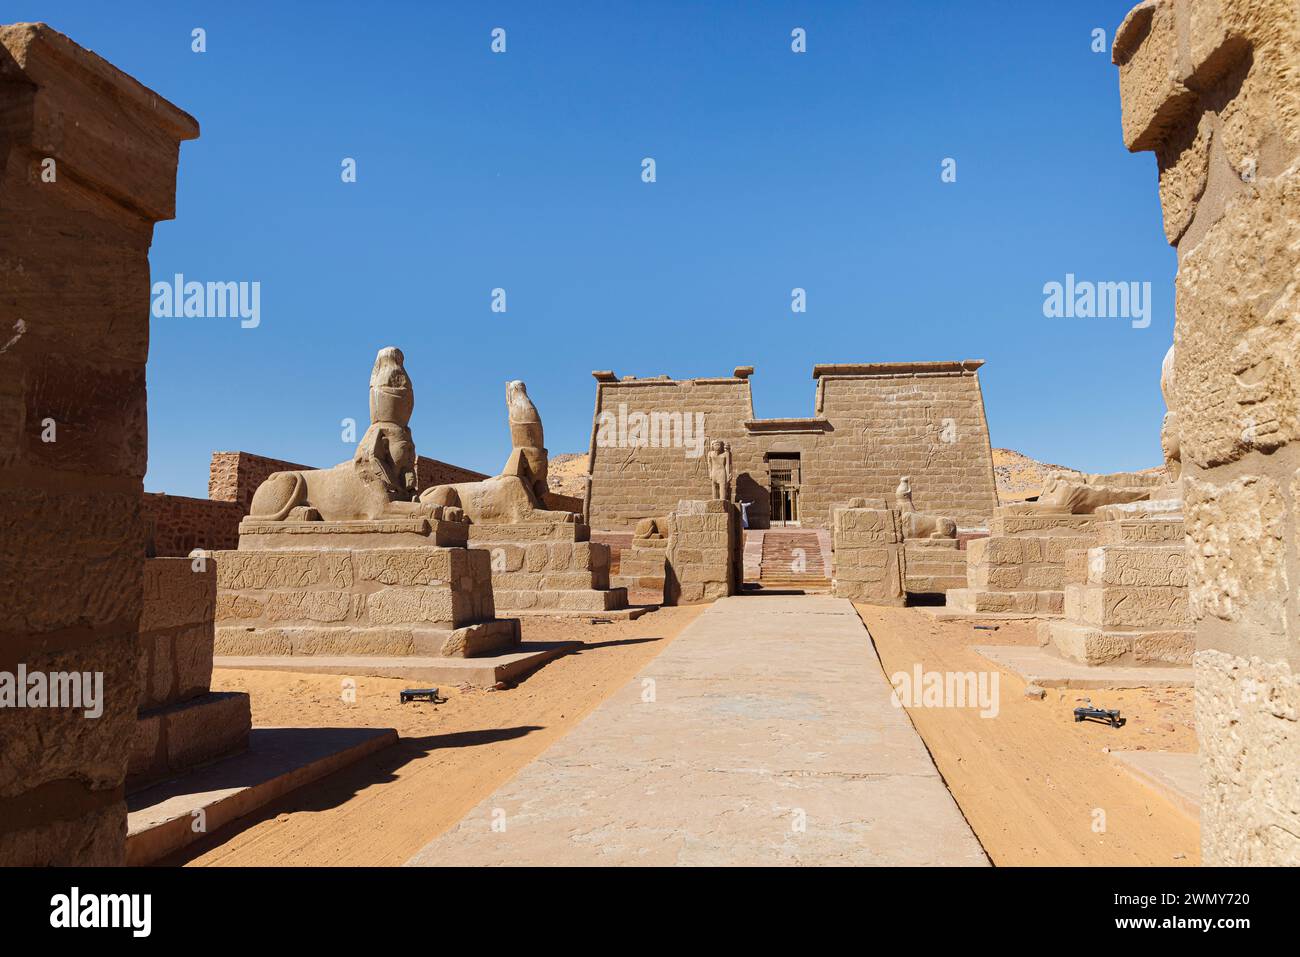 Egitto, Assuan, monumenti nubiani da Abu Simbel a file, patrimonio mondiale dell'UNESCO, tempio Wadi al Sebua Foto Stock